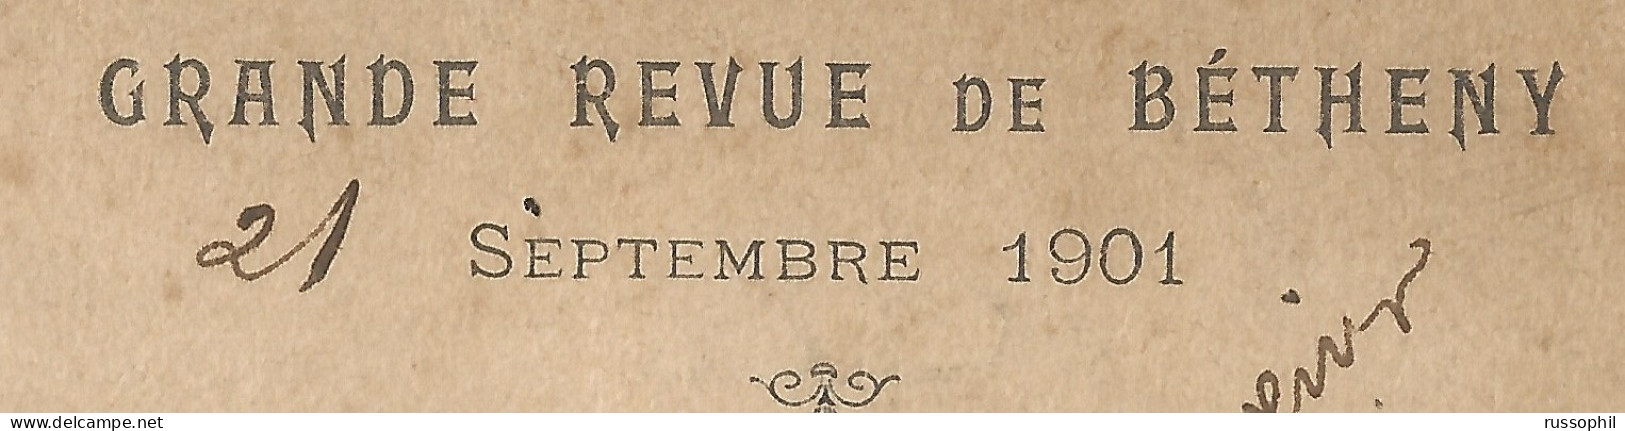 FRANCO RUSSIAN ALLIANCE - GRANDE REVUE DE BETHENY - 21 SEPTEMBRE 1901 - VUE DE BETHENY, PRES REIMS - 1901 - Evènements